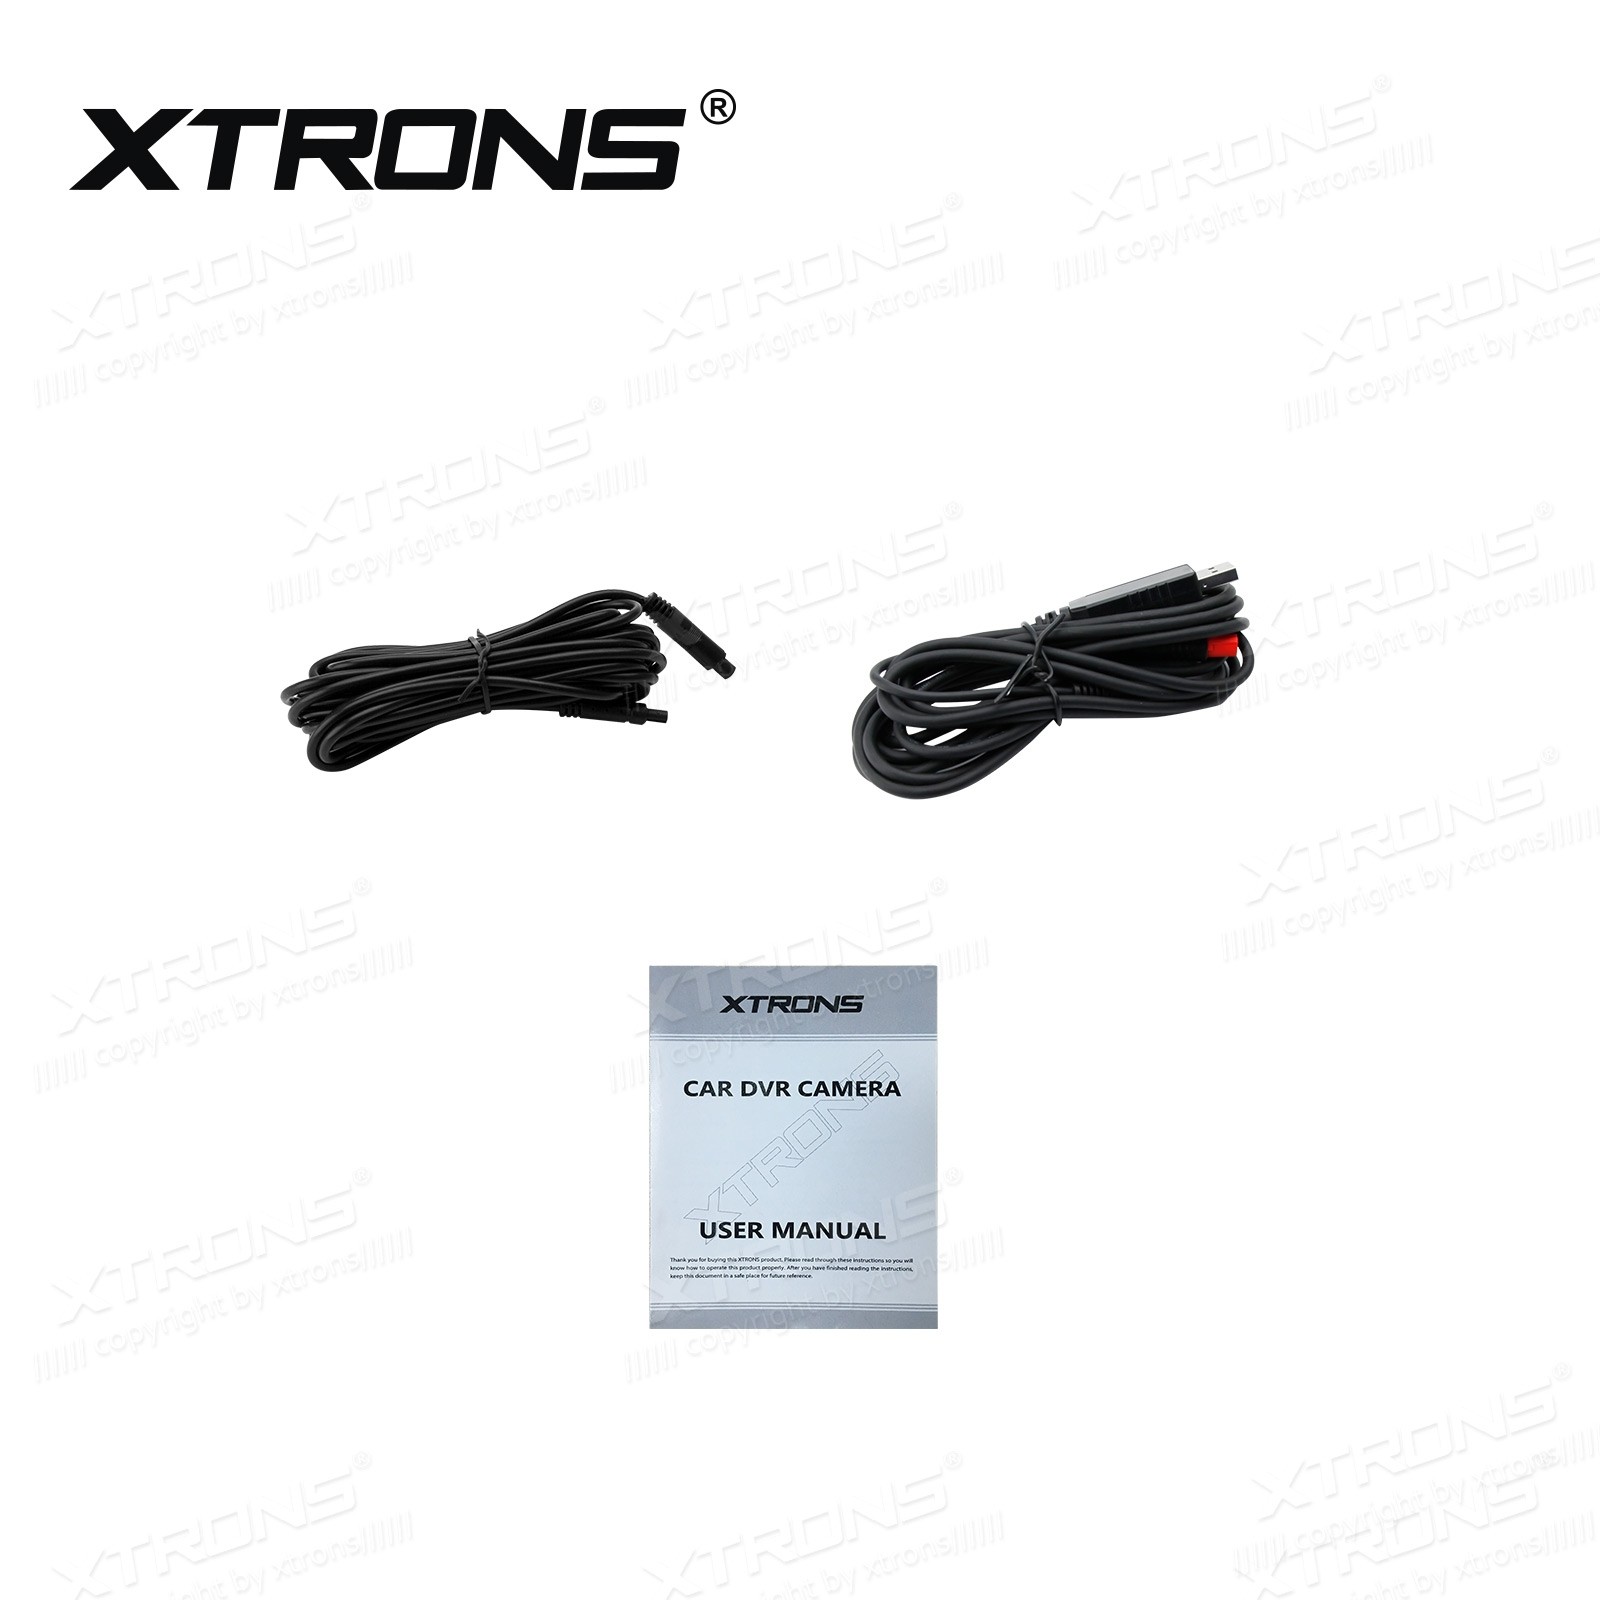 DVR027S 720P pardakaamera USB liidesega spetsiaalselt Xtrons android multimeediale